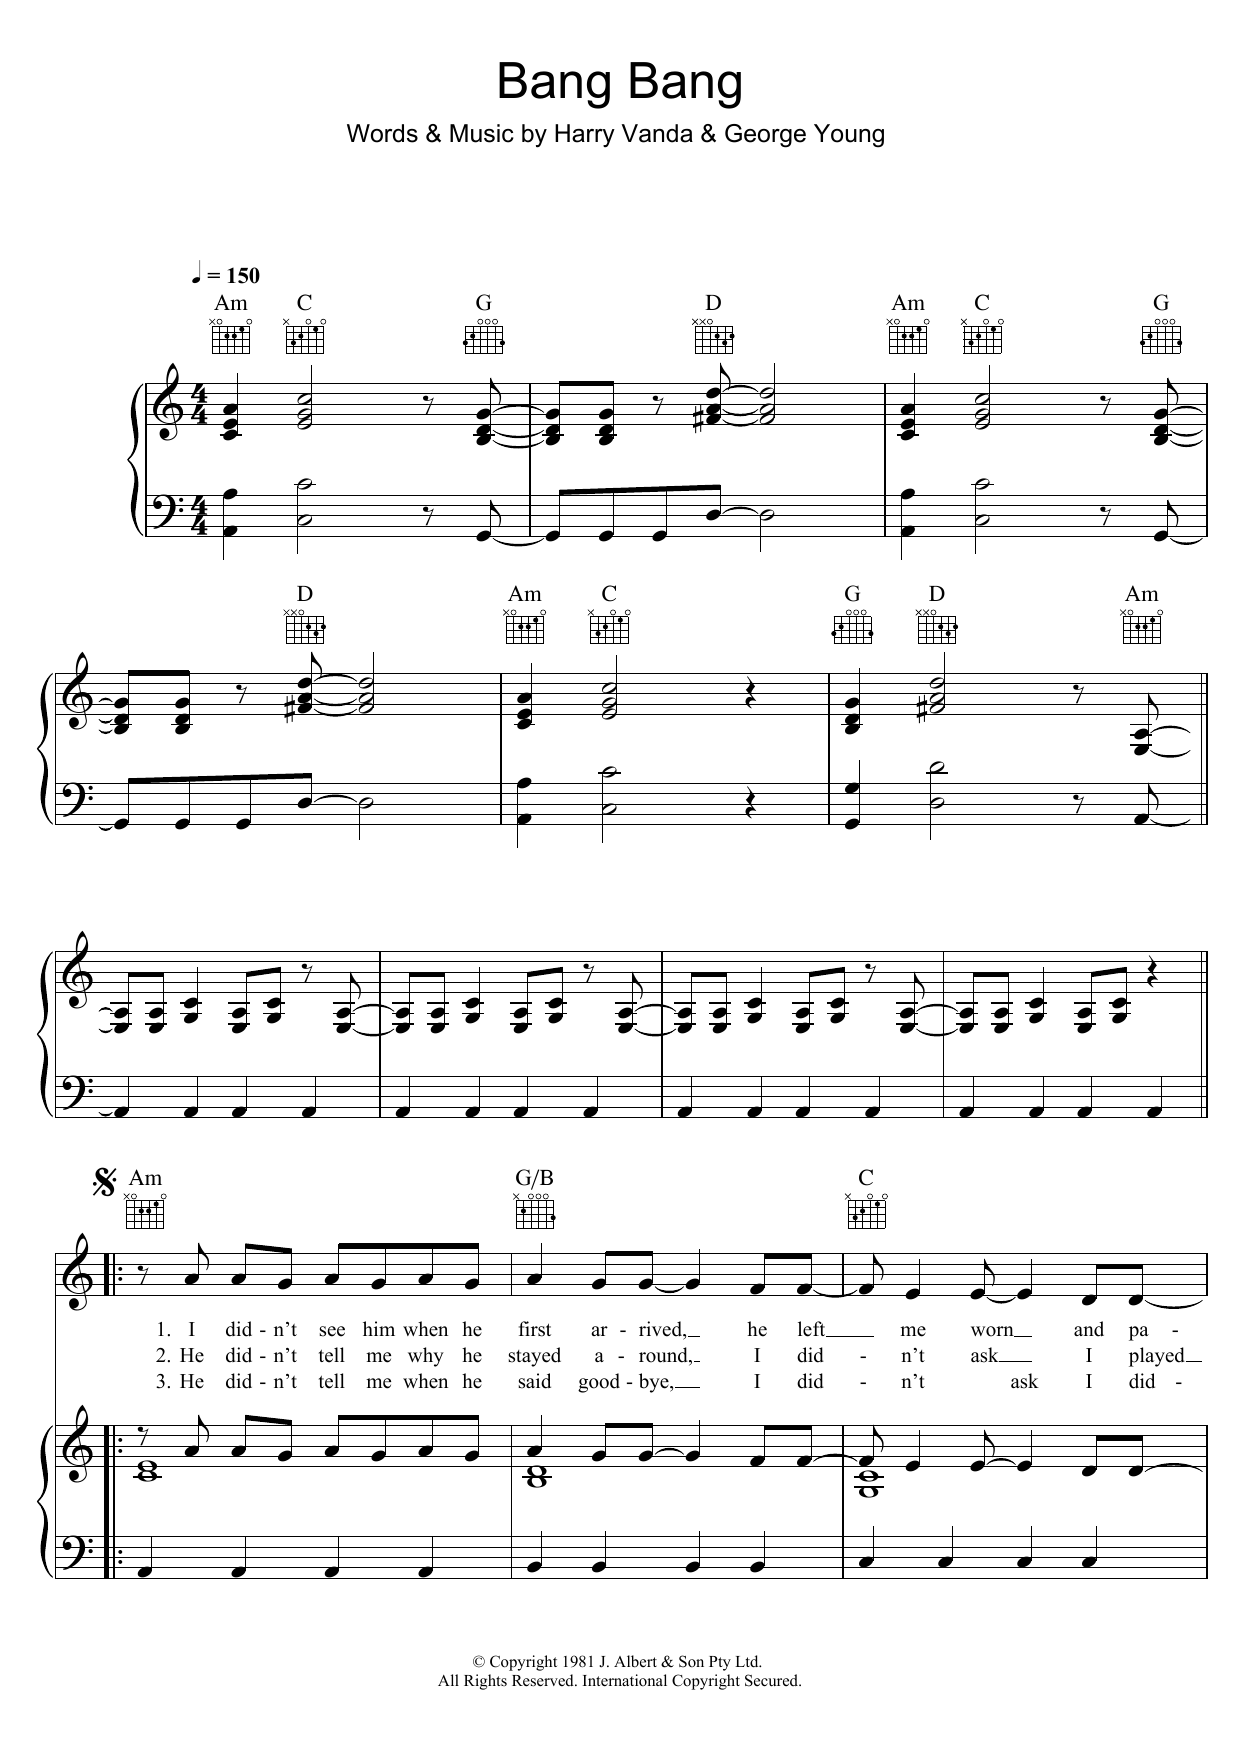 Cheetah Bang Bang sheet music notes and chords arranged for Piano, Vocal & Guitar Chords